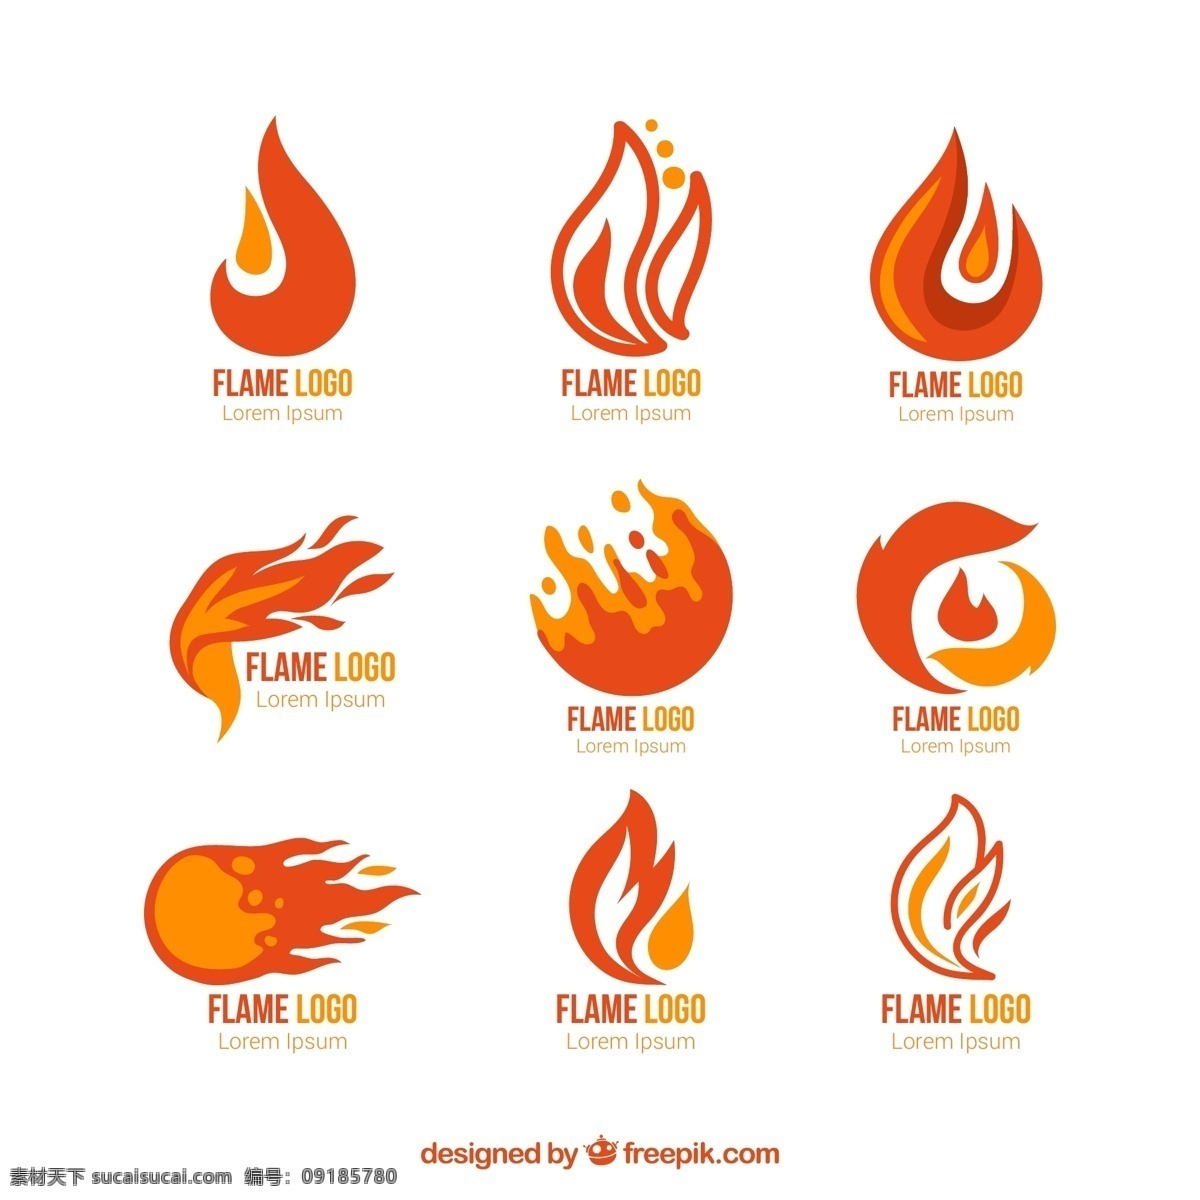 创意 火苗 火焰 突变 元素 火 效果素材 热 热情 创意设计 创意元素 红色 旺盛